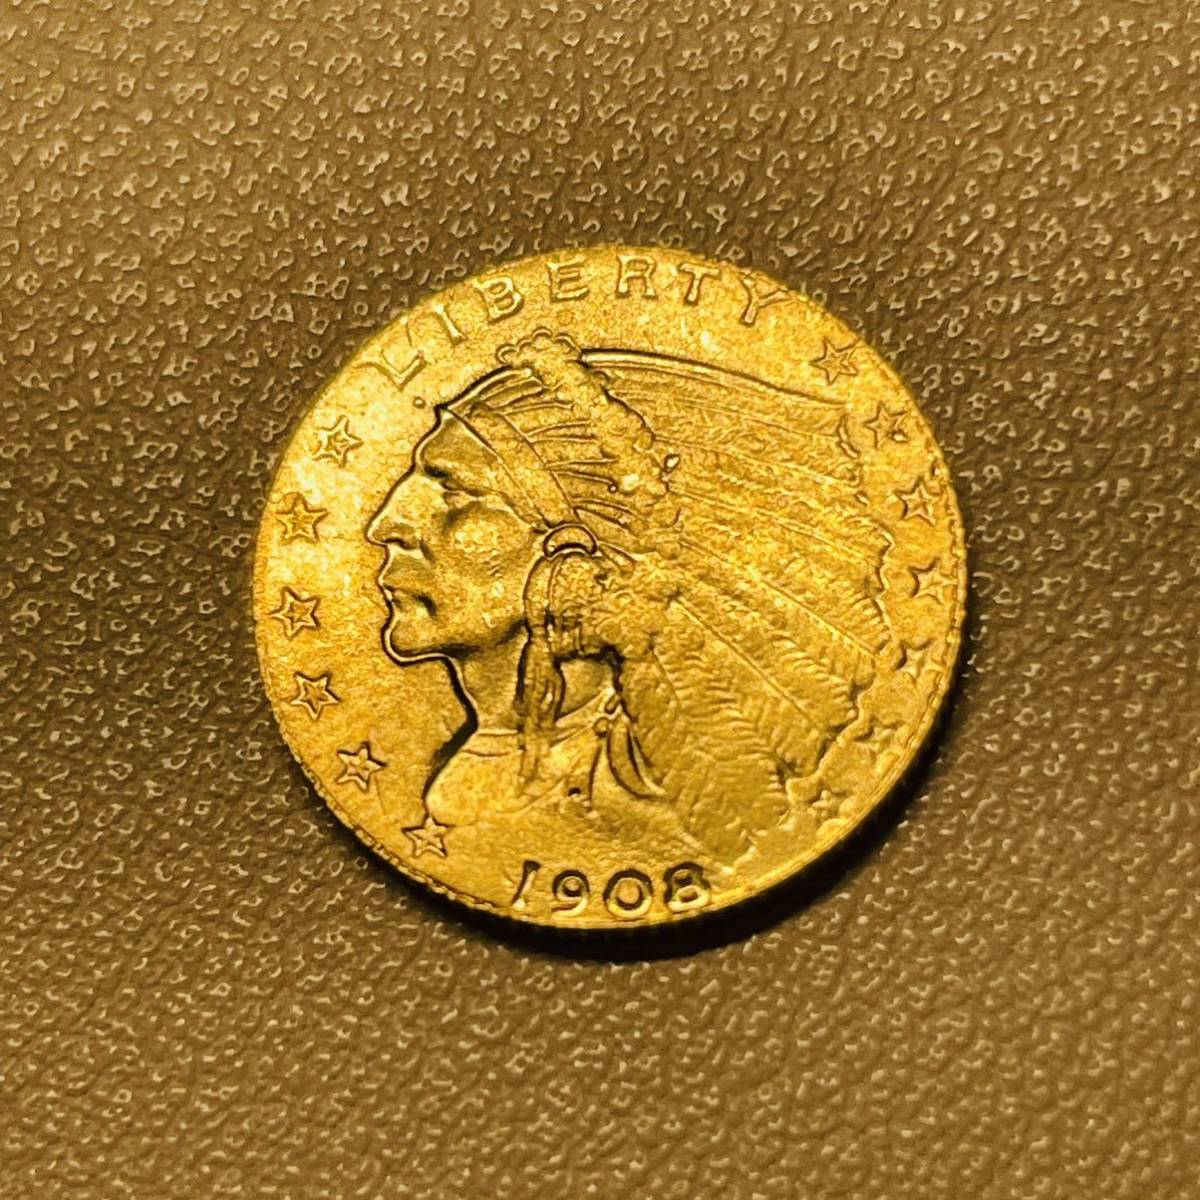 アメリカ 硬貨 古銭 インディアン人像 1908年 イーグル リバティ ドル 記念幣 コイン 重2.57g_画像1